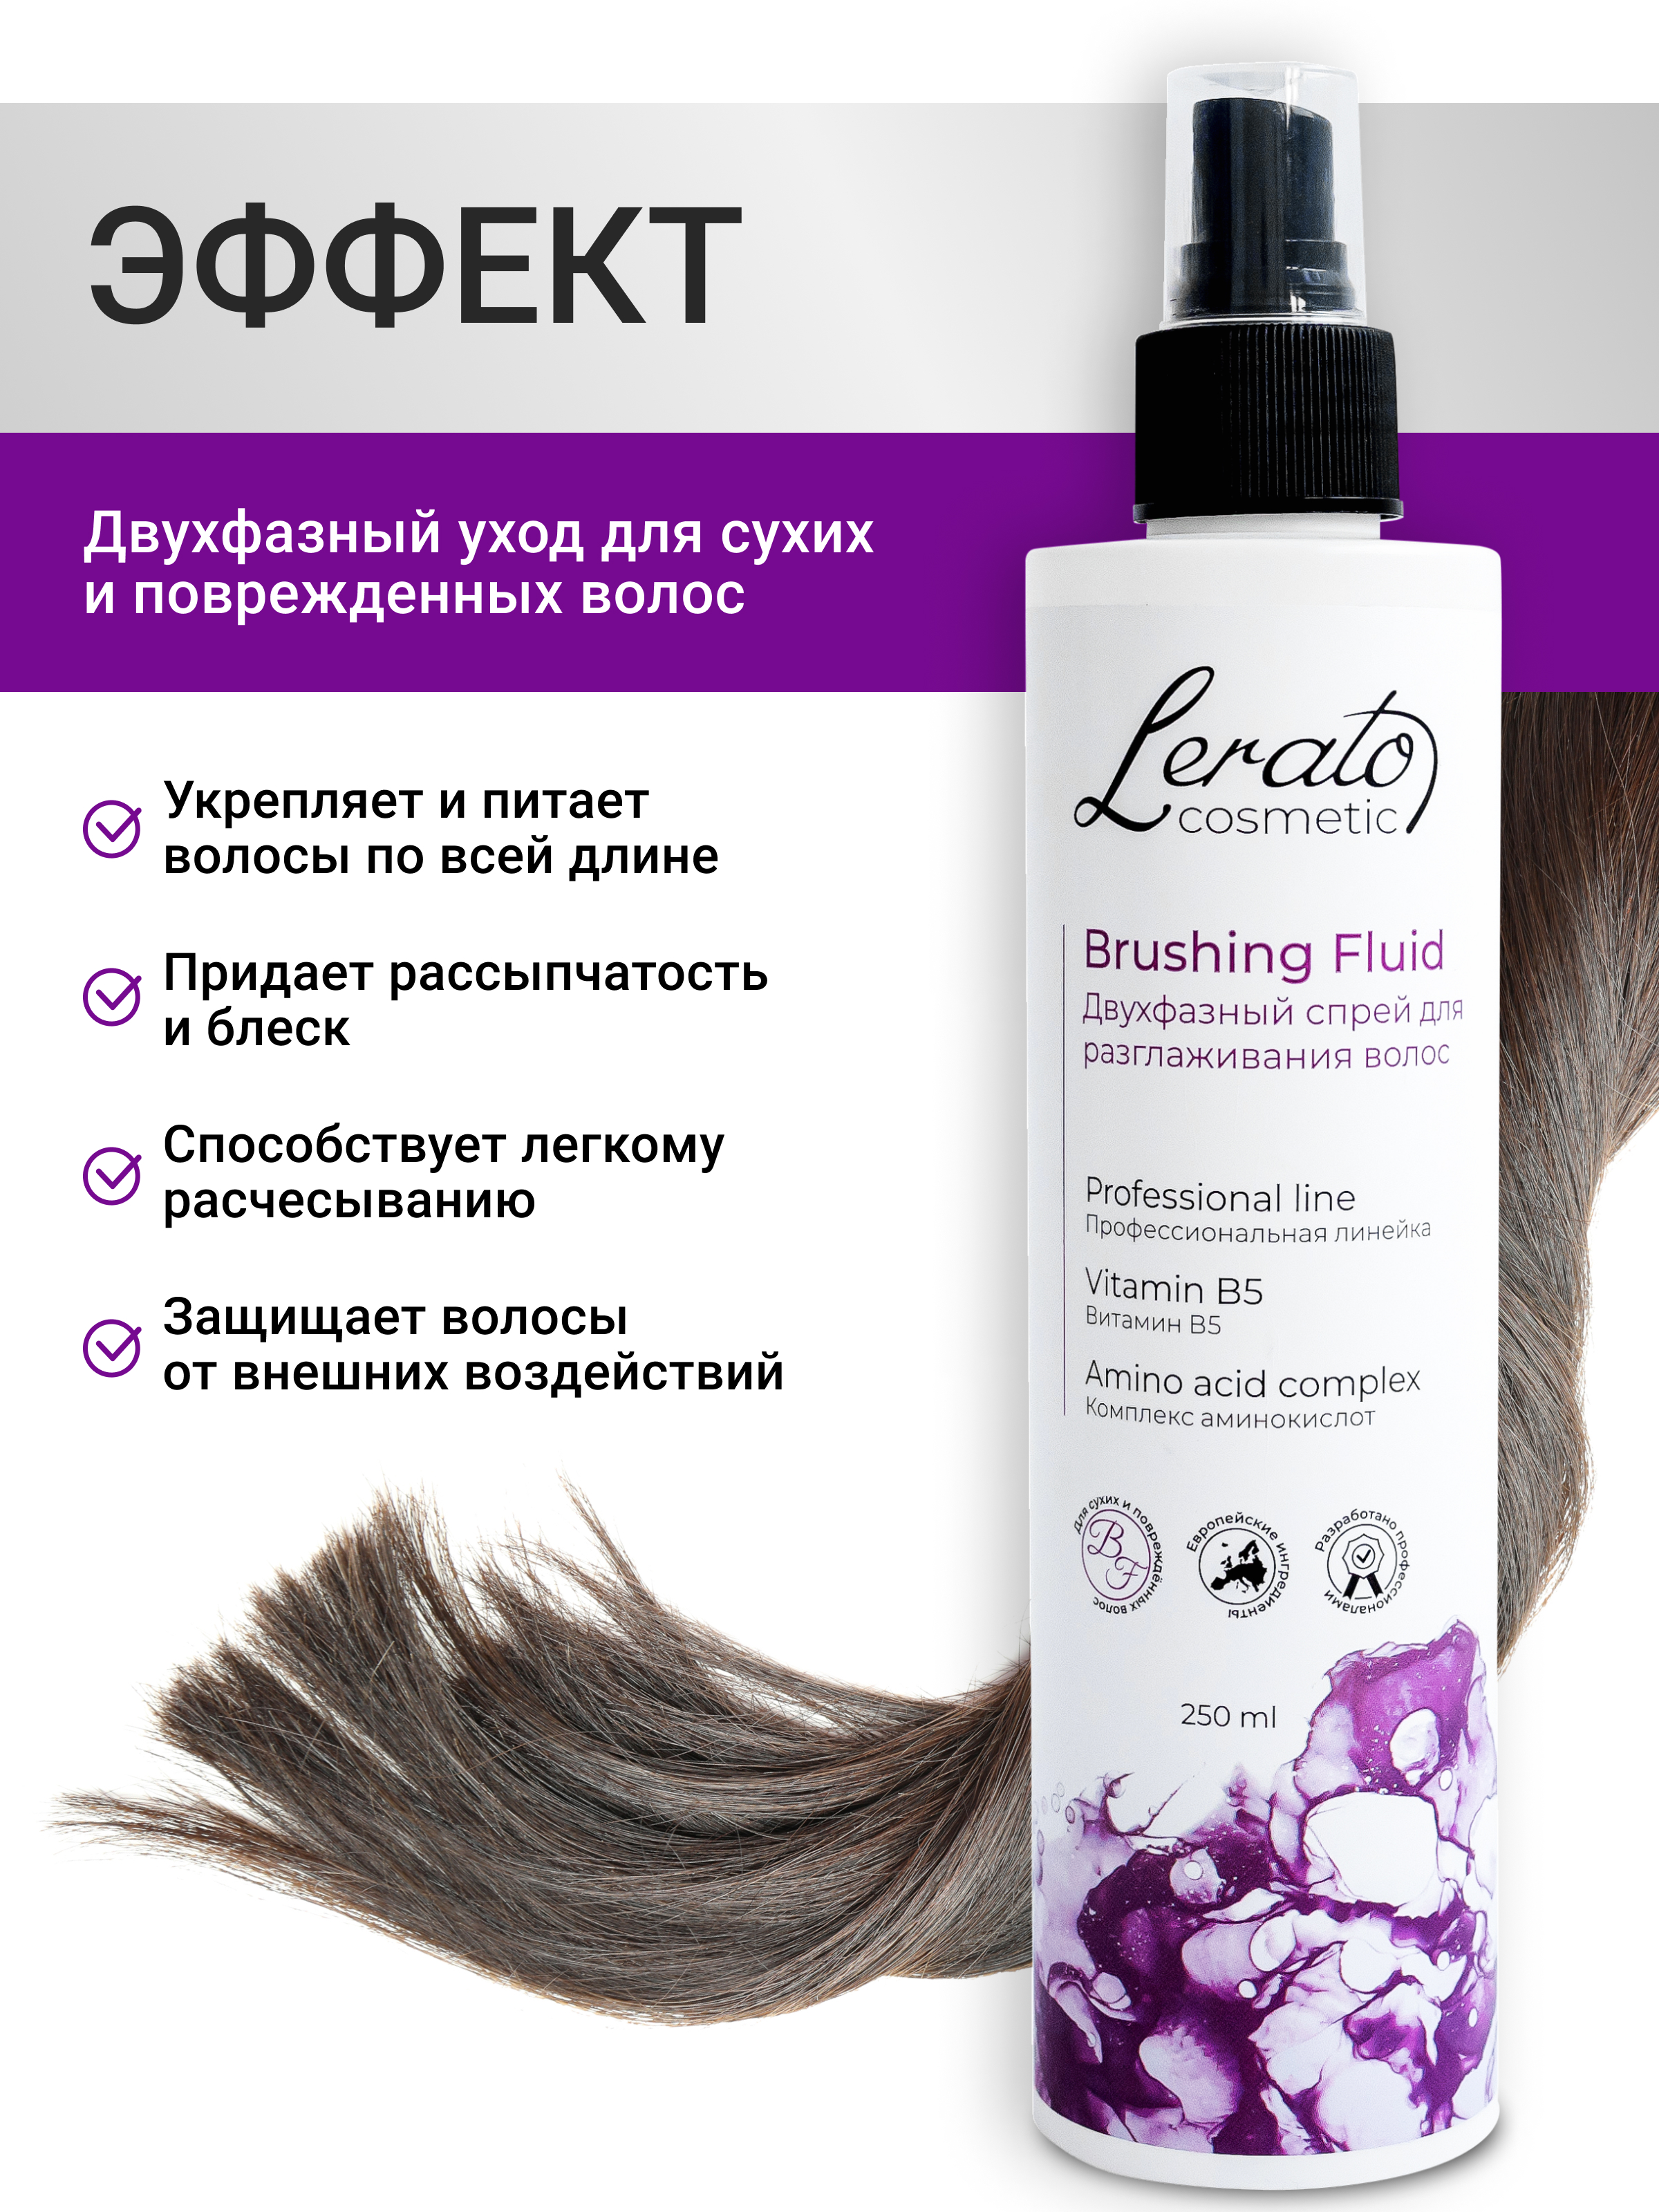 Спрей для волос Lerato Cosmetic Двухфазный для разглаживания и лёгкого расчёсывания поврежденных волос 250мл - фото 4